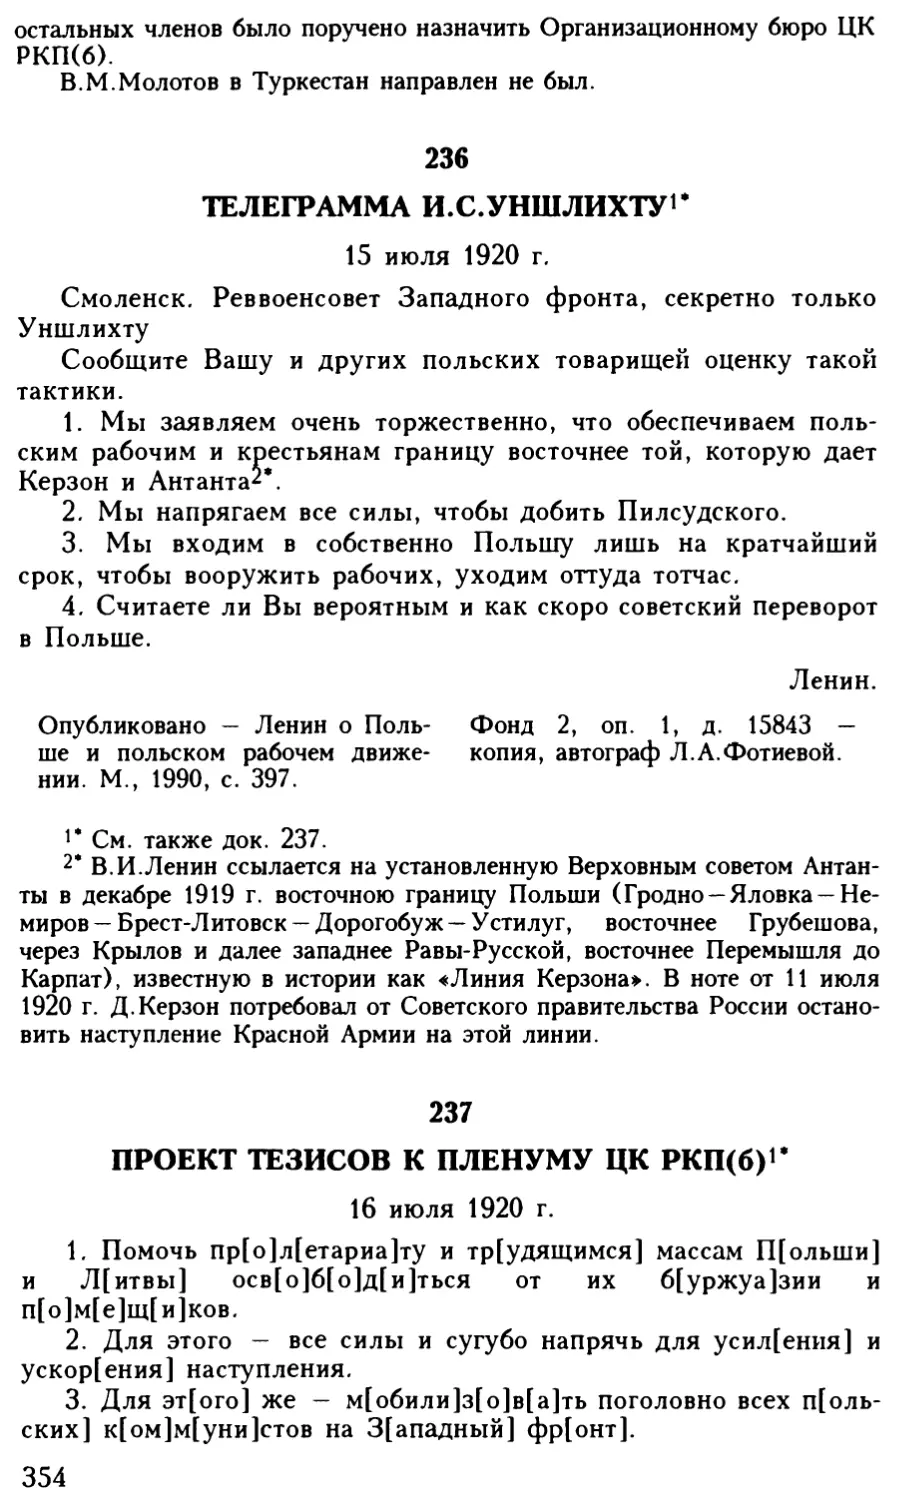 236. Телеграмма И.С.Уншлихту. 15 июля 1920 г